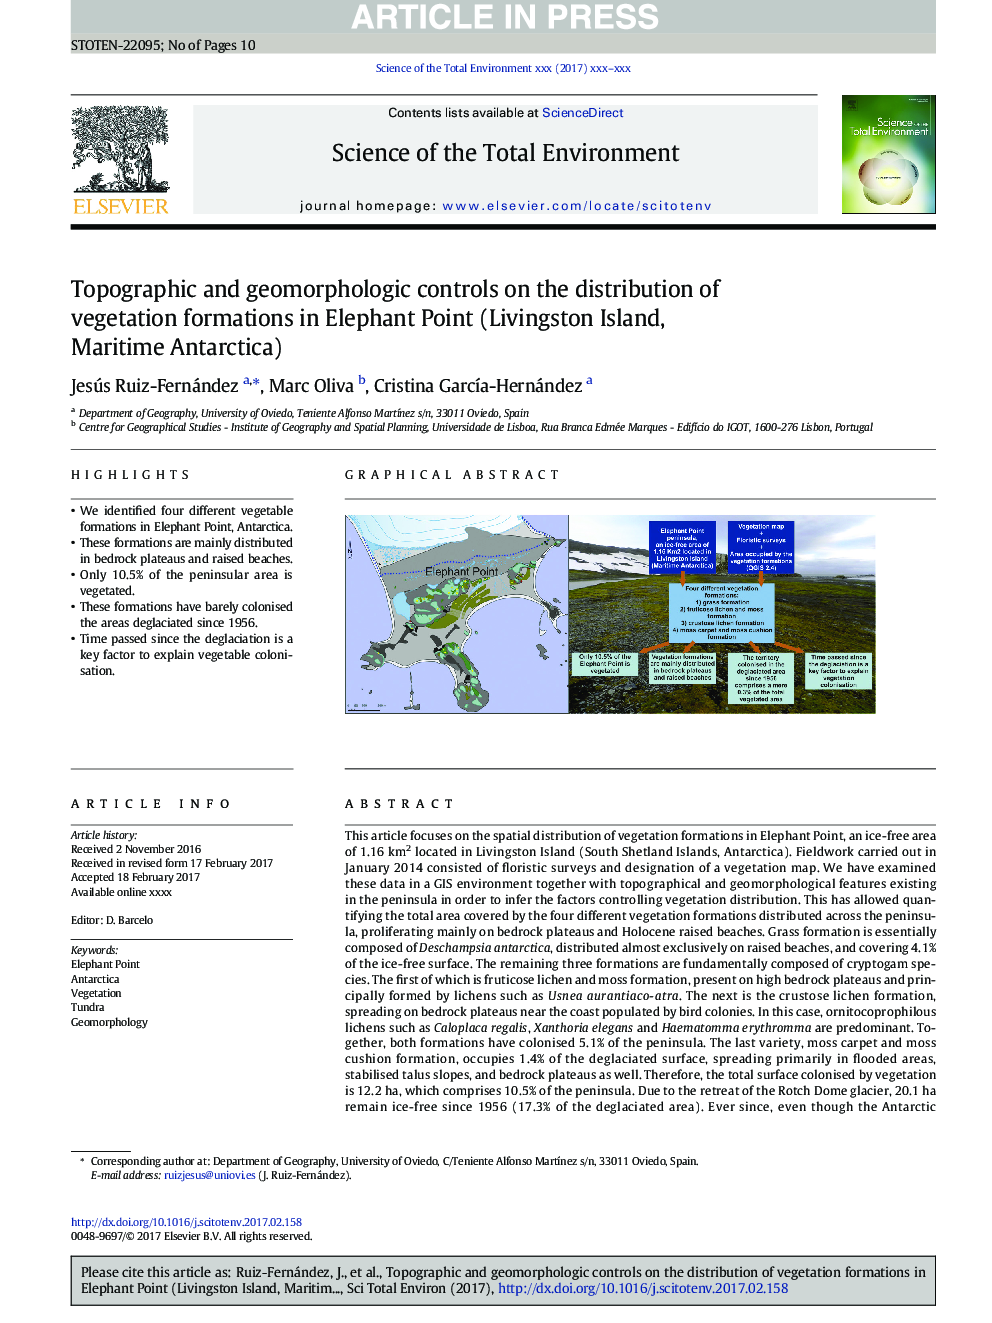 کنترل توپوگرافی و ژئومورفولوژیک در توزیع سازه های گیاهی در نقطه فیل (جزیره لیوینگستون، دریای قطب جنوب) 